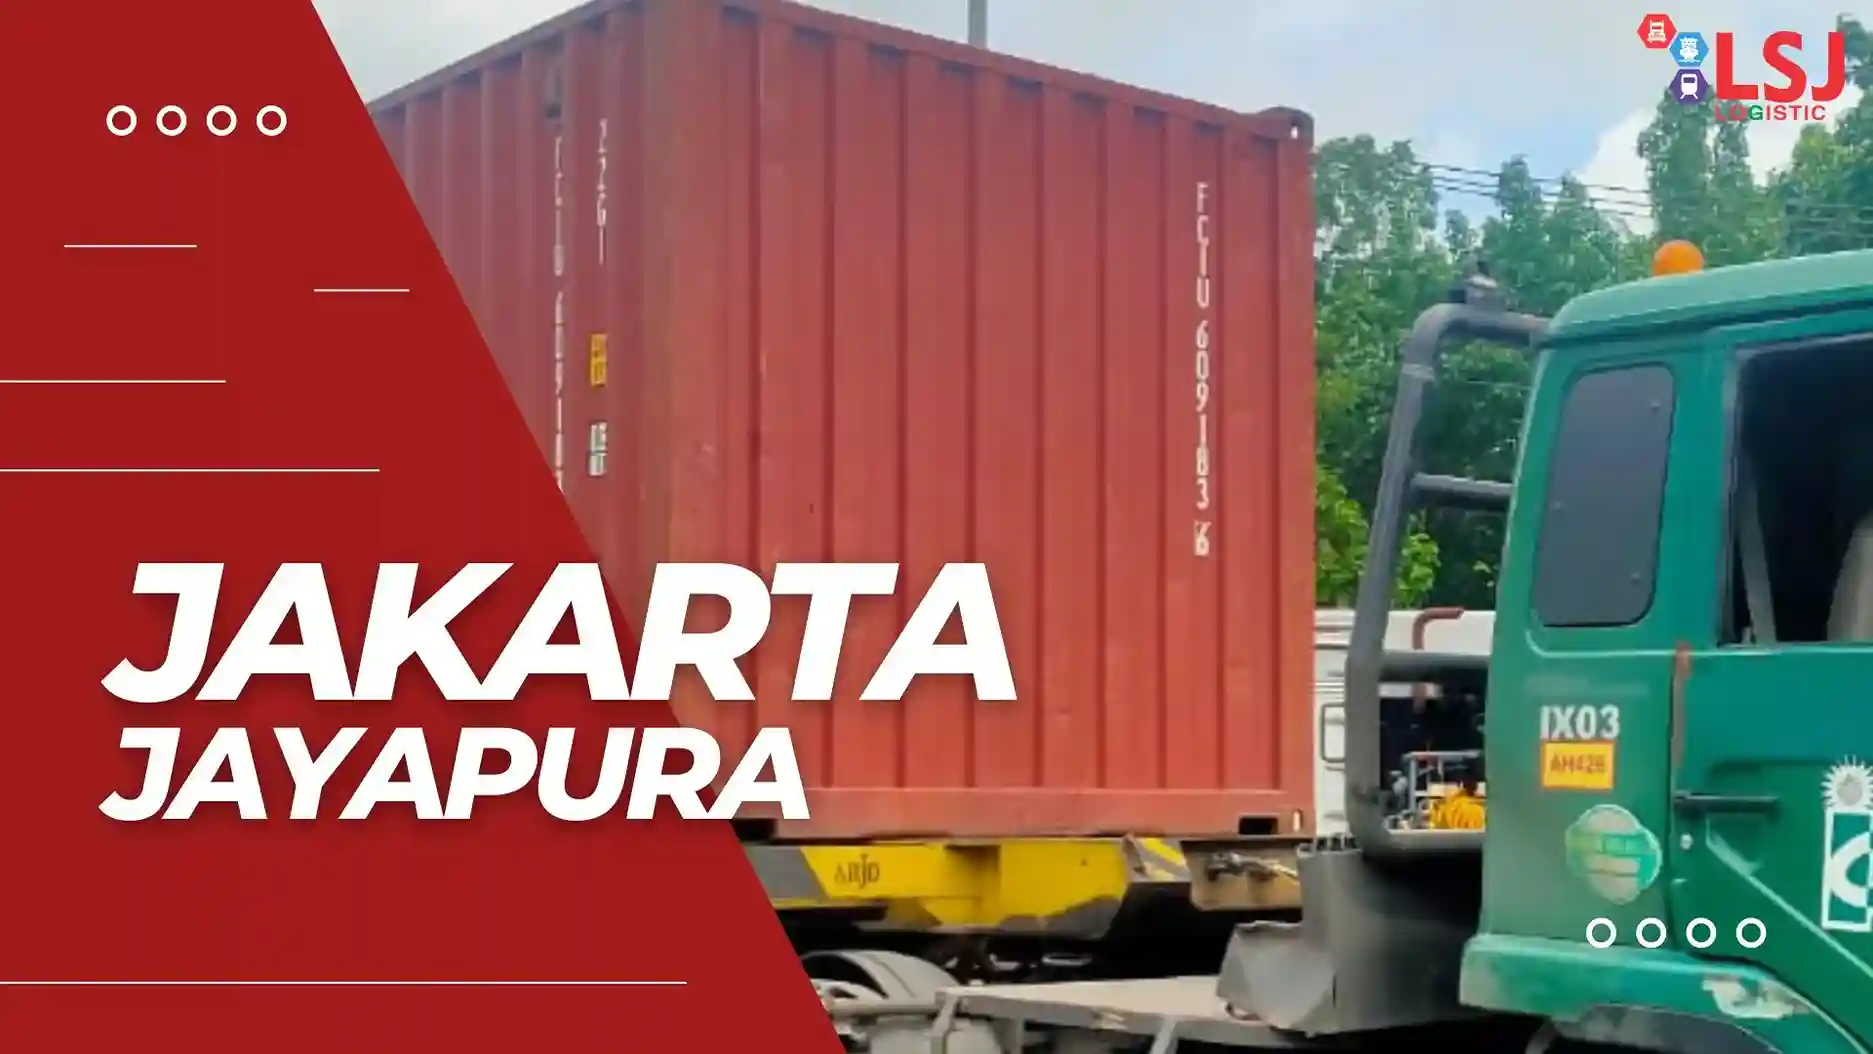 Ekspedisi Container Jakarta Jayapura